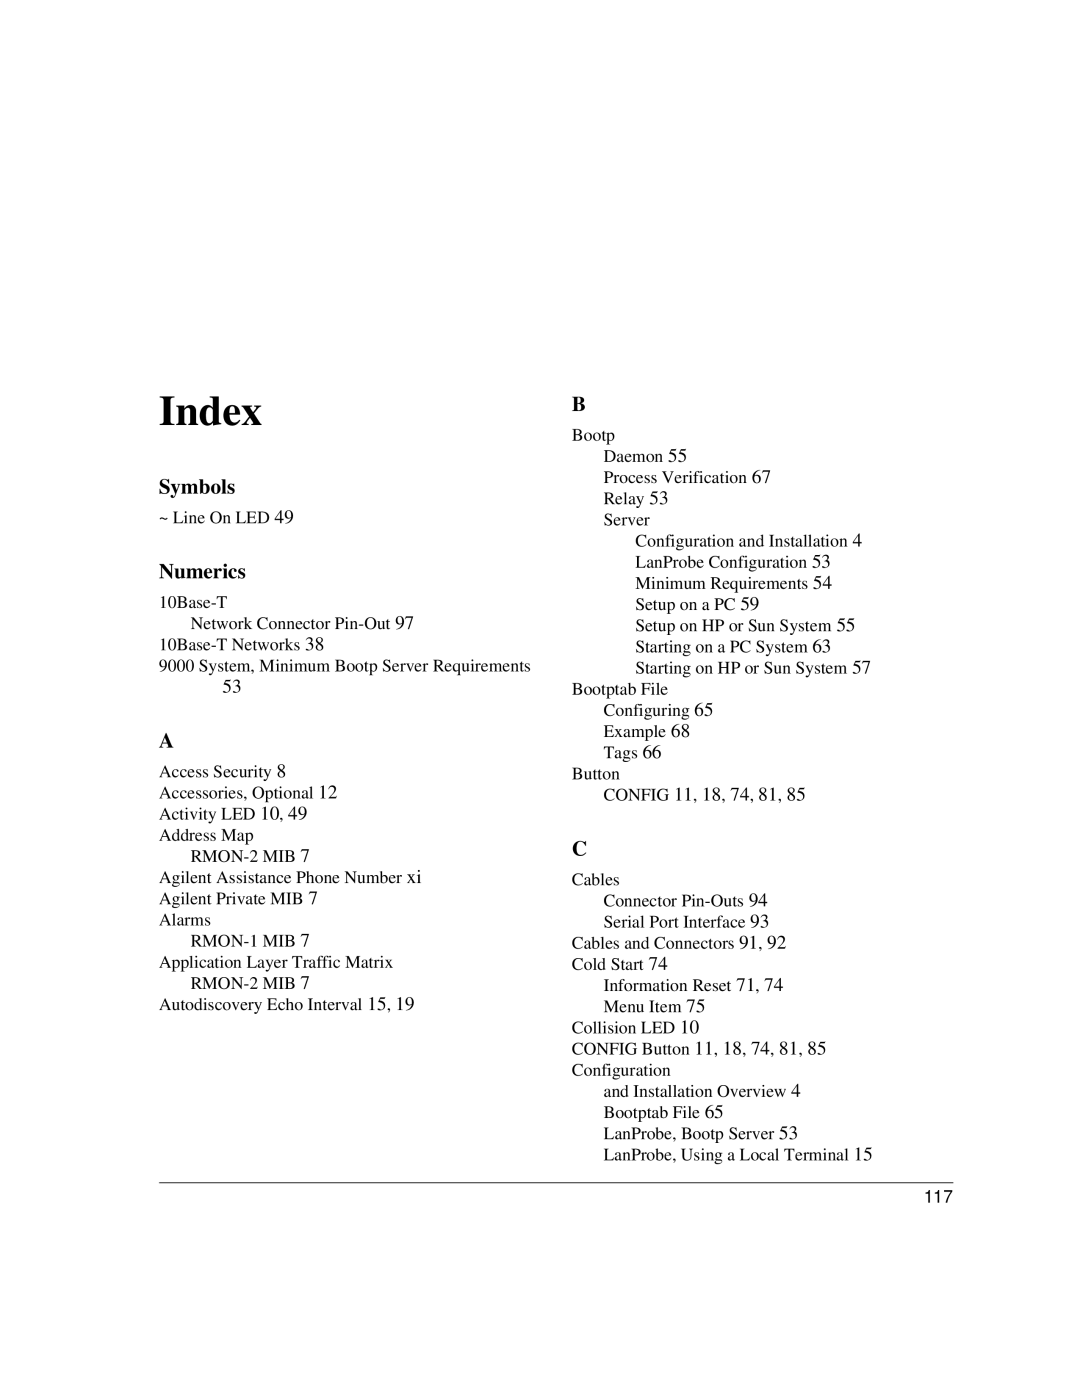 IBM 4986B LanProbe manual Index, Symbols, Numerics 